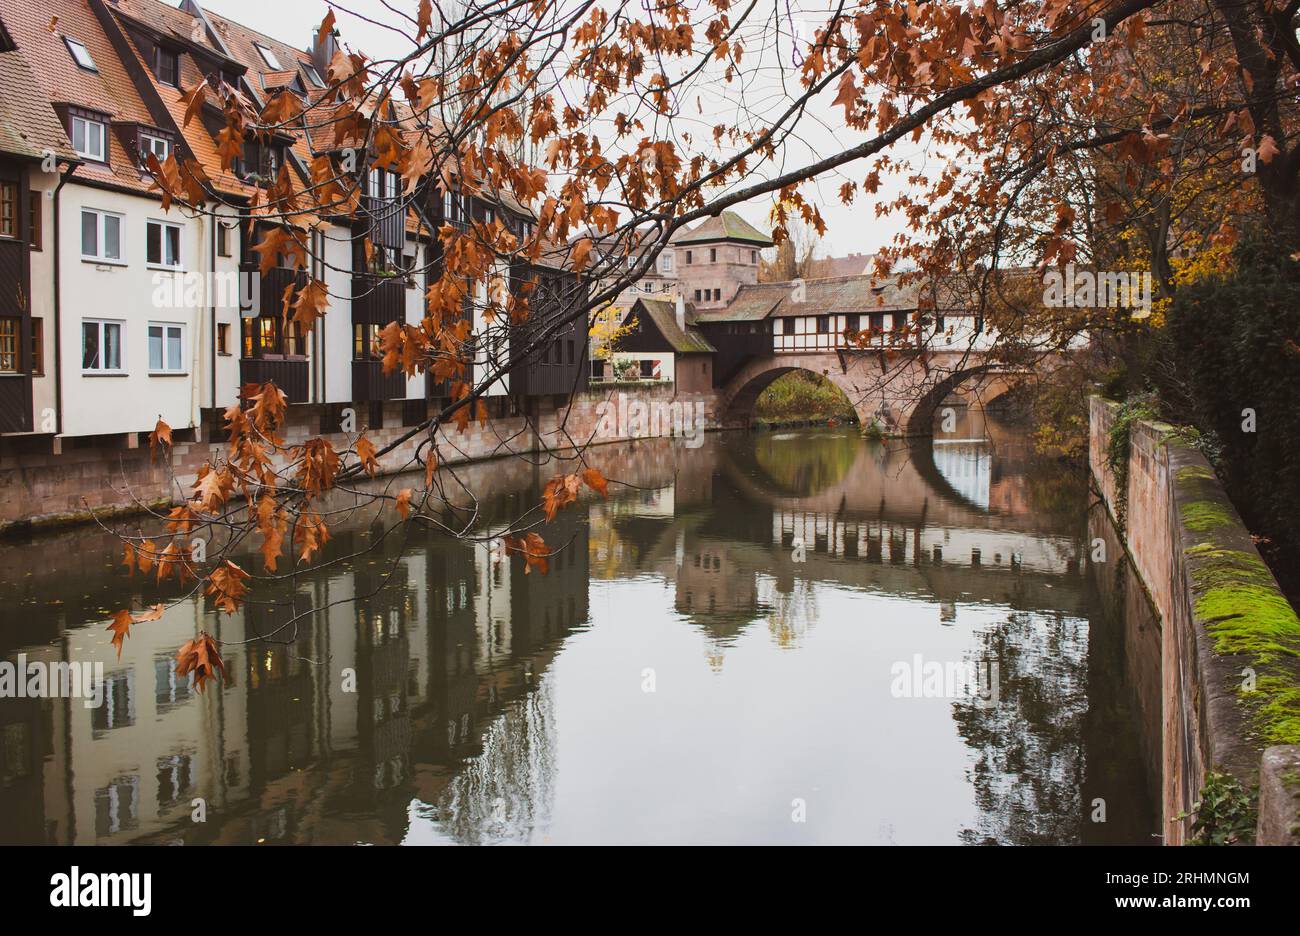 Nuremberg Altstadt point de repère. Maisons médiévales et pont Henkersteg sur la rivière Pegnitz. Vieille ville de Nuremberg, Allemagne. Paysage d'automne dans la vieille ville. Banque D'Images